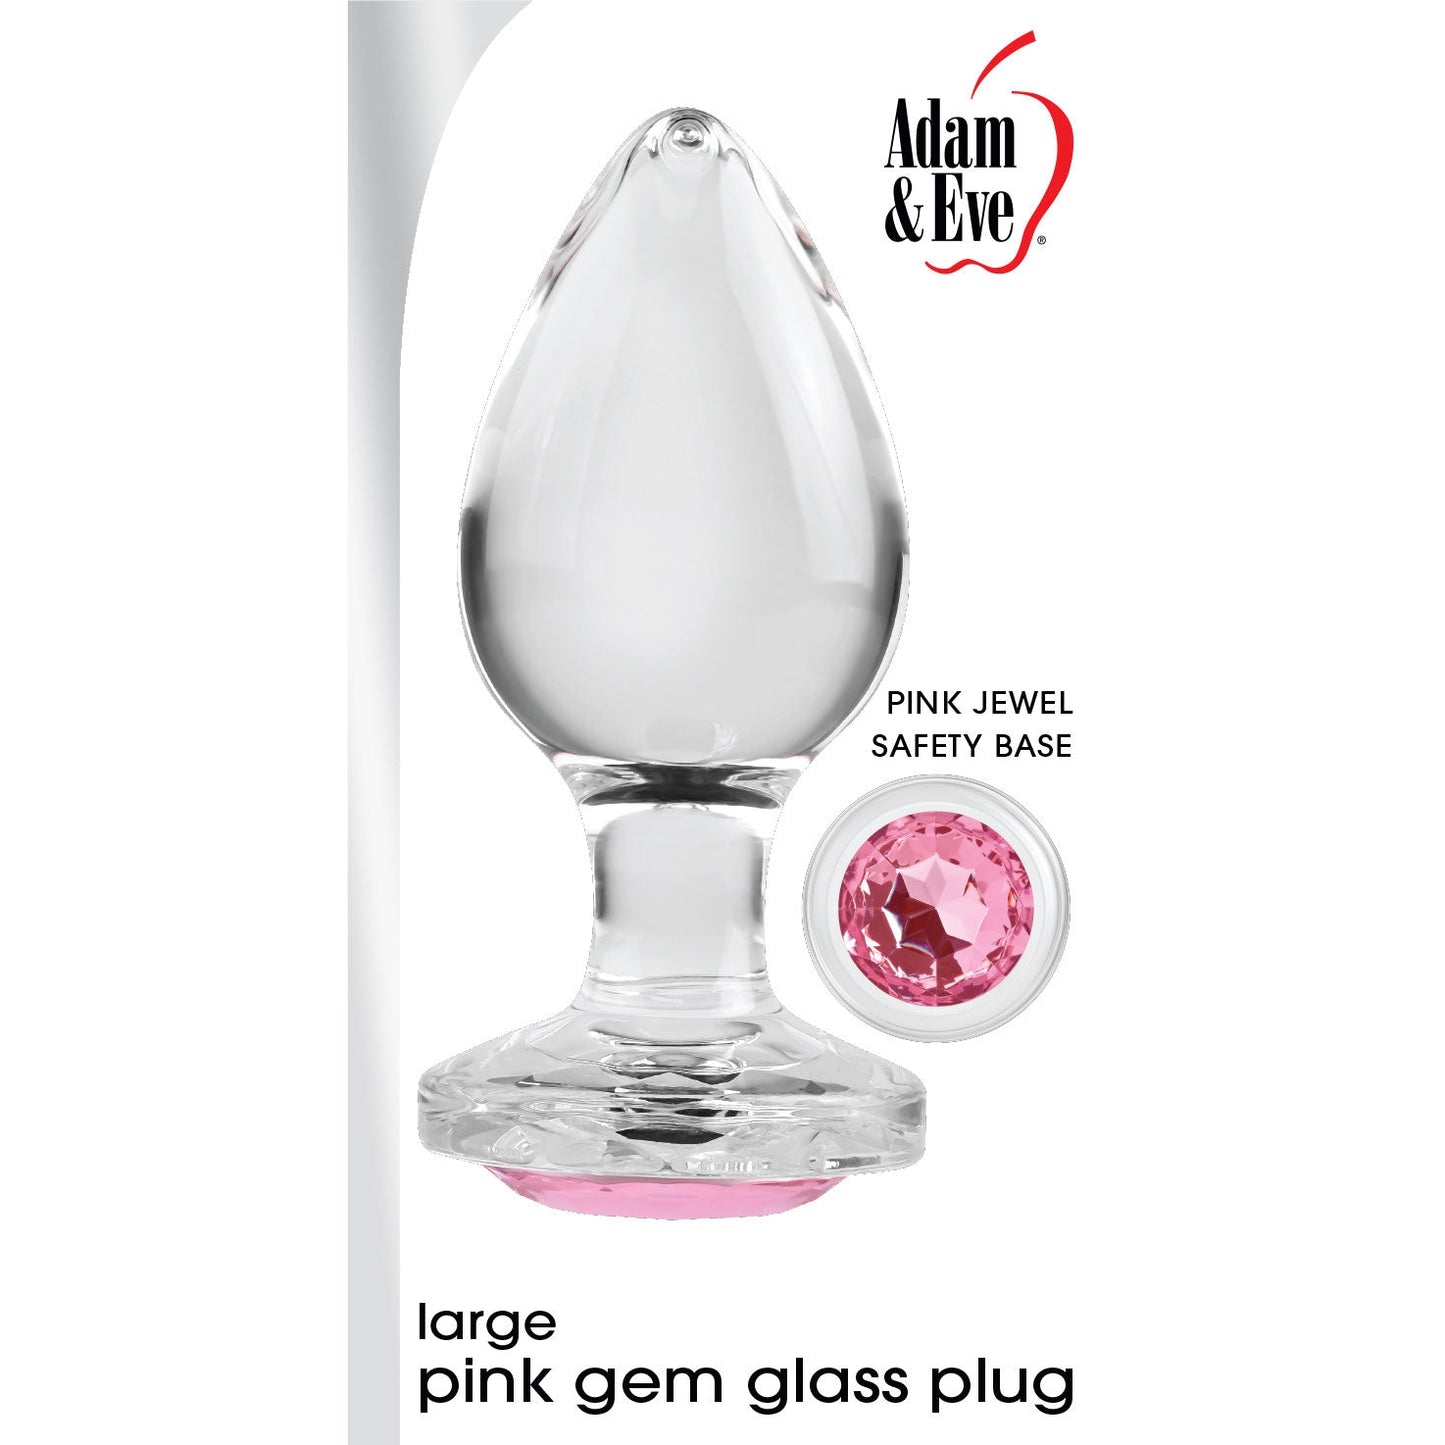 Pink Gem Glass Plug - Large - Pink